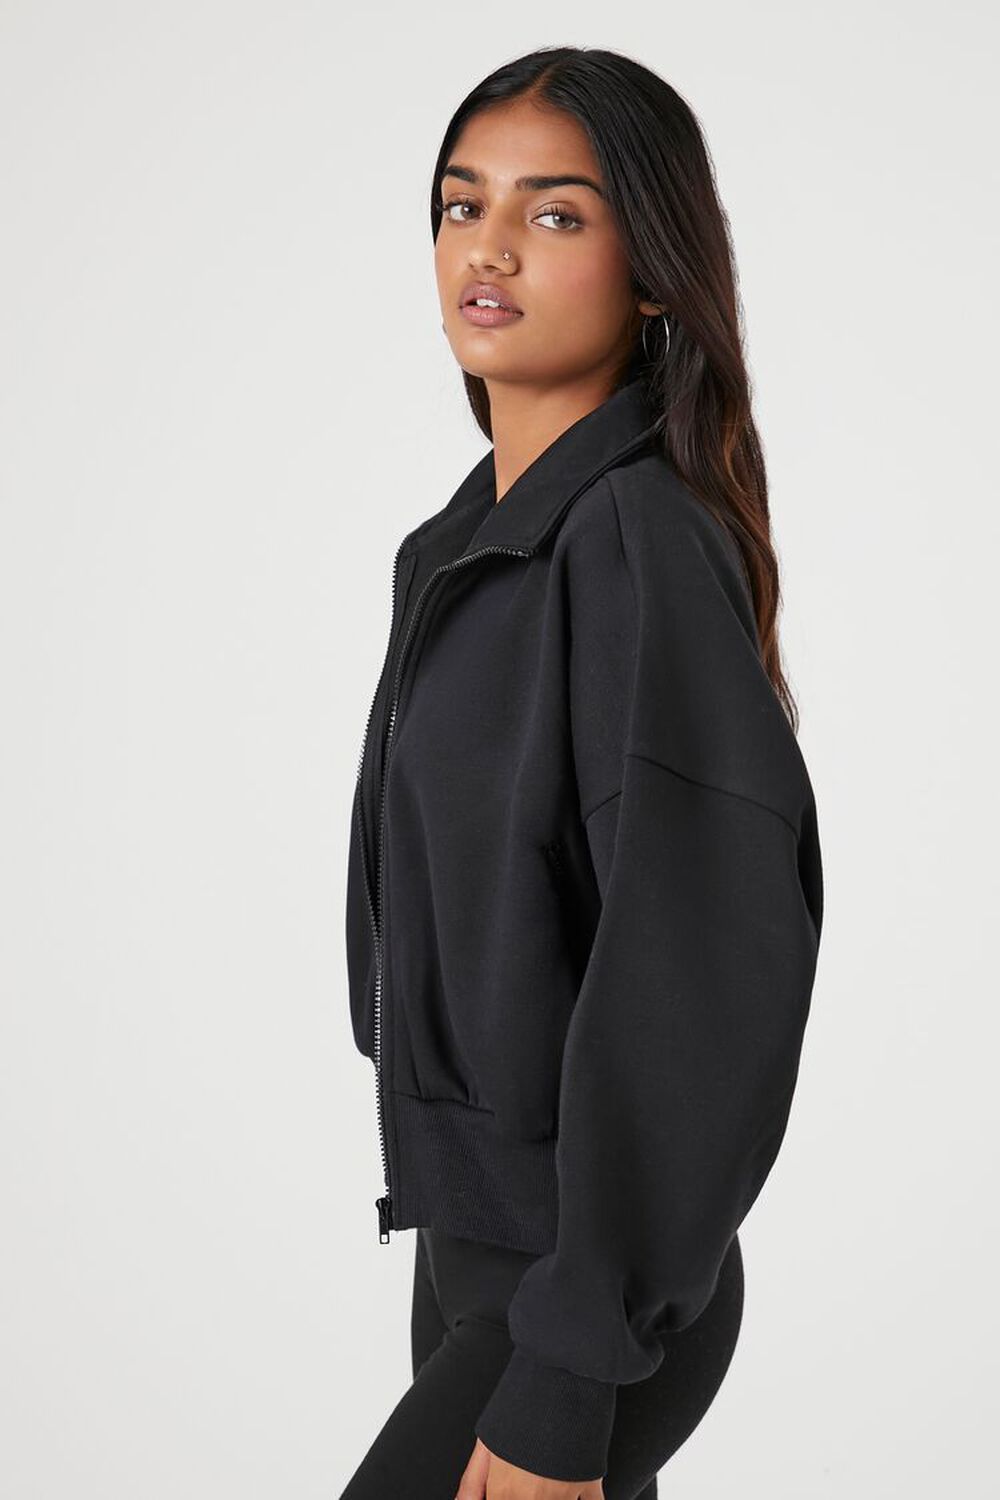 BLACK Heathered Fleece Zip-Up Jacket, image 2